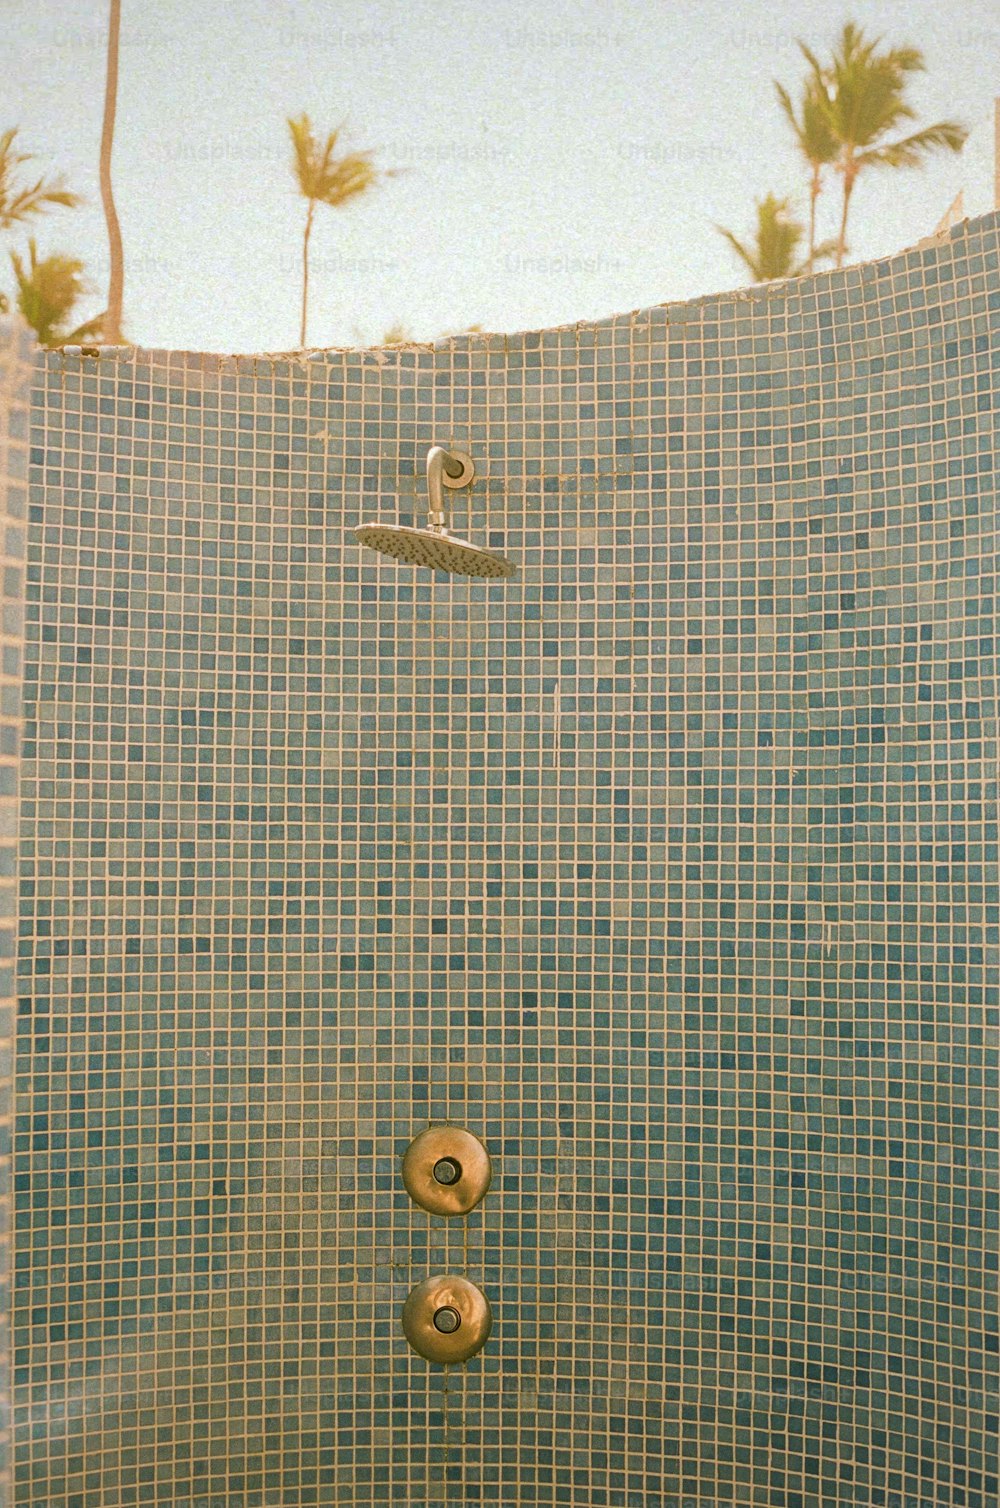 シャワーヘッドとハンドヘルドシャワー蛇口を備えたタイル張りのシャワー